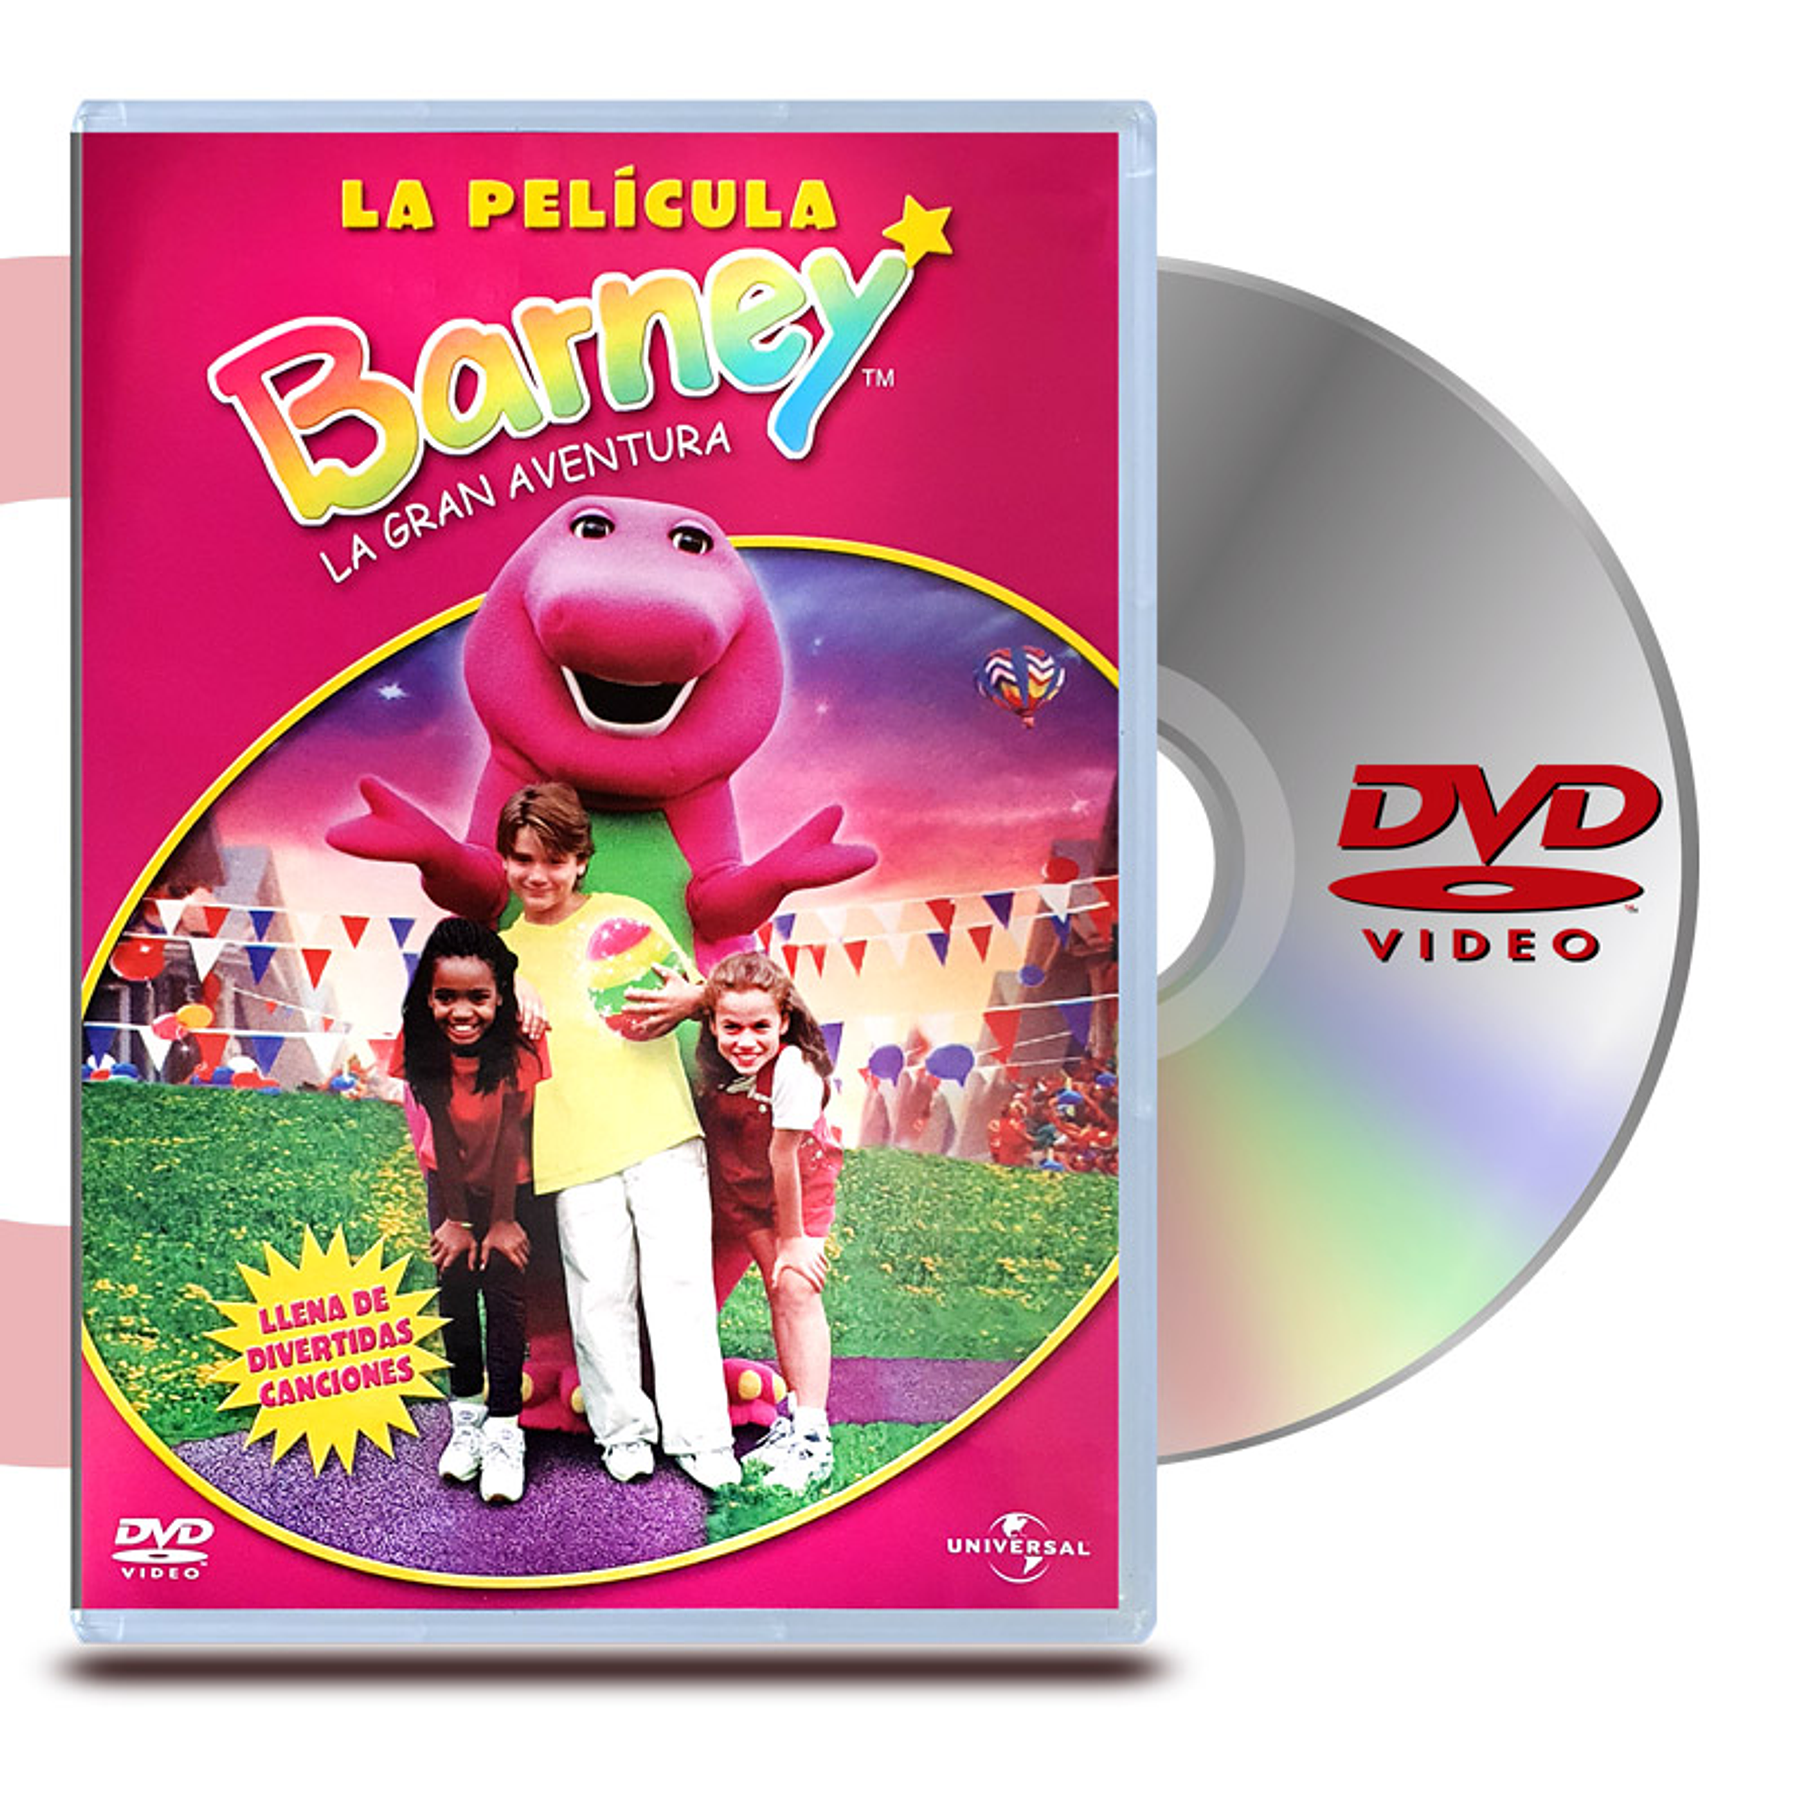 PACK DVD BARNEY Y SUS AMIGOS